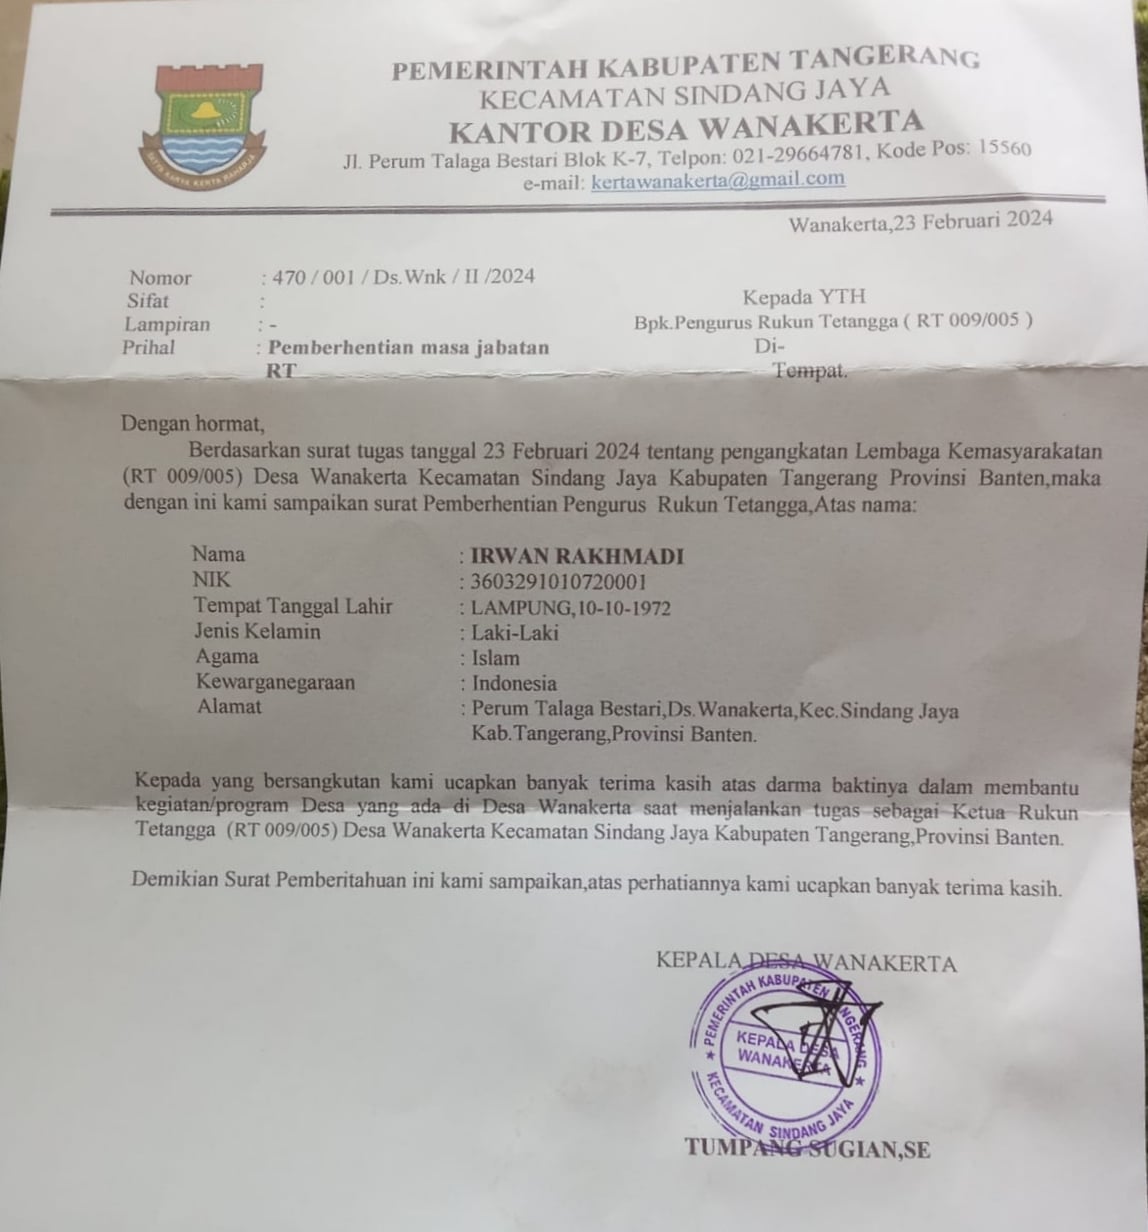 21 ketua RT dan 6 ketua RW dipecat Kades di Kecamatan Sindang Jaya, Kabupaten Tangerang, Banten, karena anaknya gagal jadi anggota DPRD.